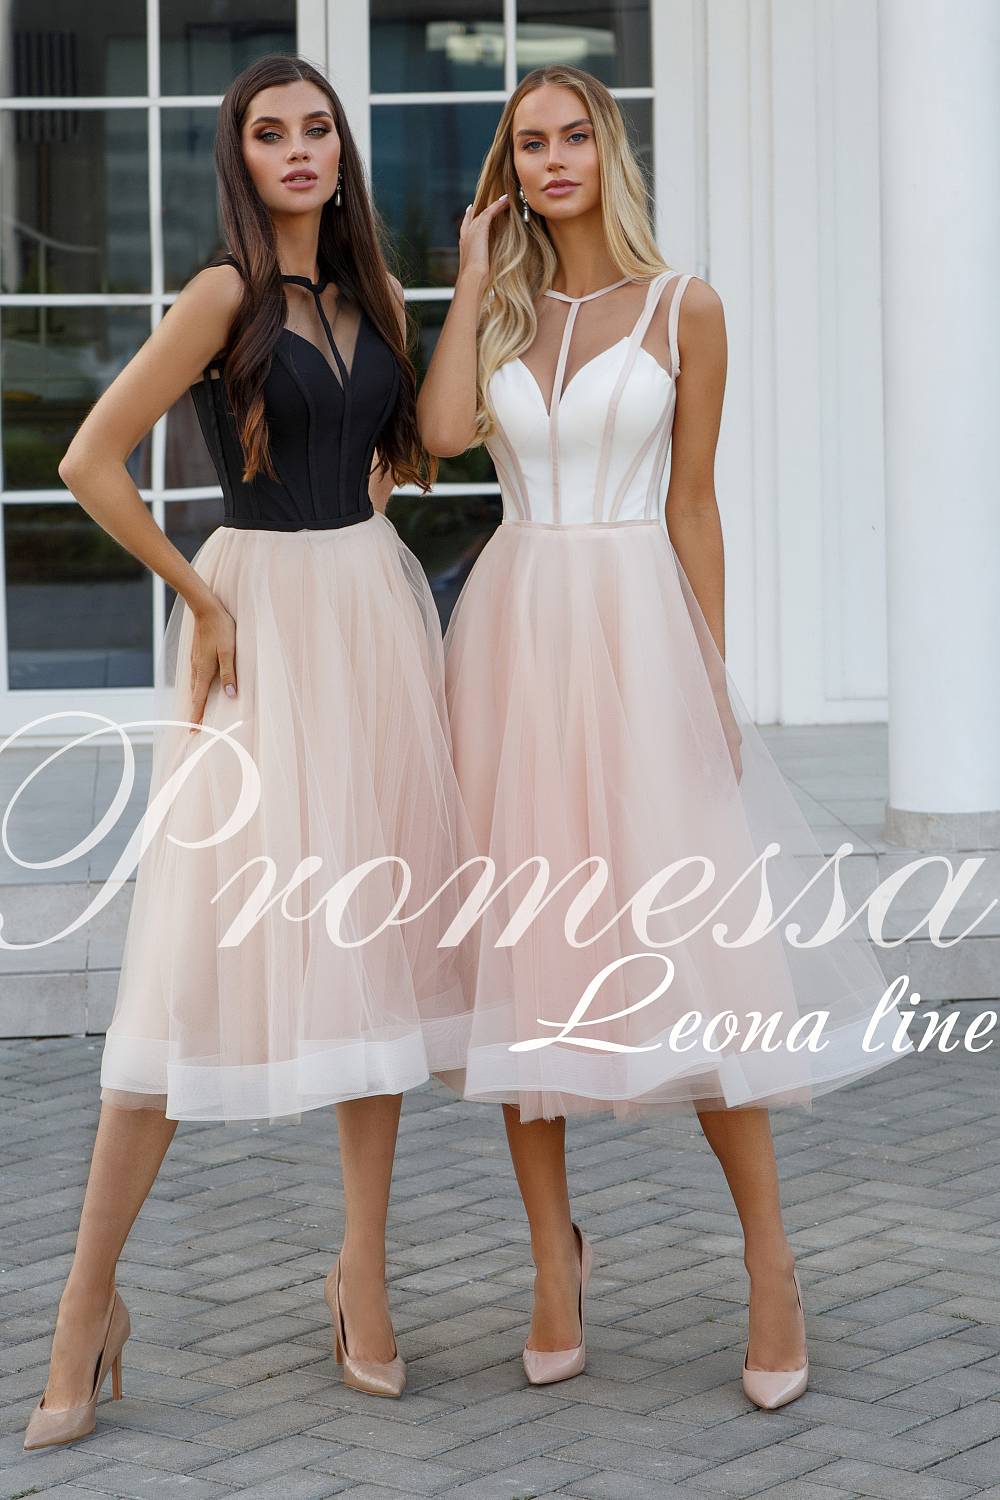 Вечернее платье Леона Лайн от Promessa